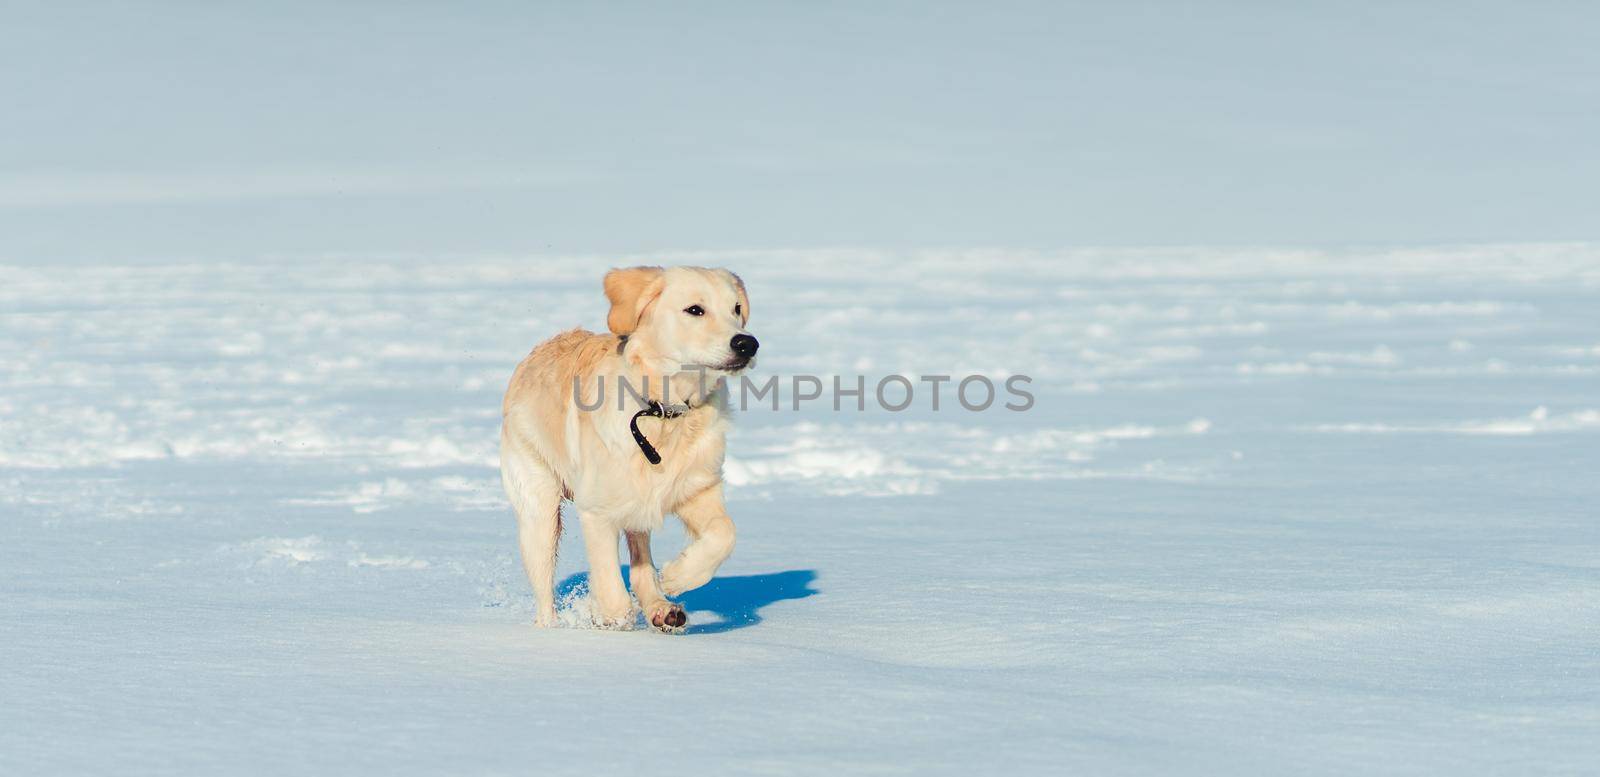 Lovely dog on snow by tan4ikk1